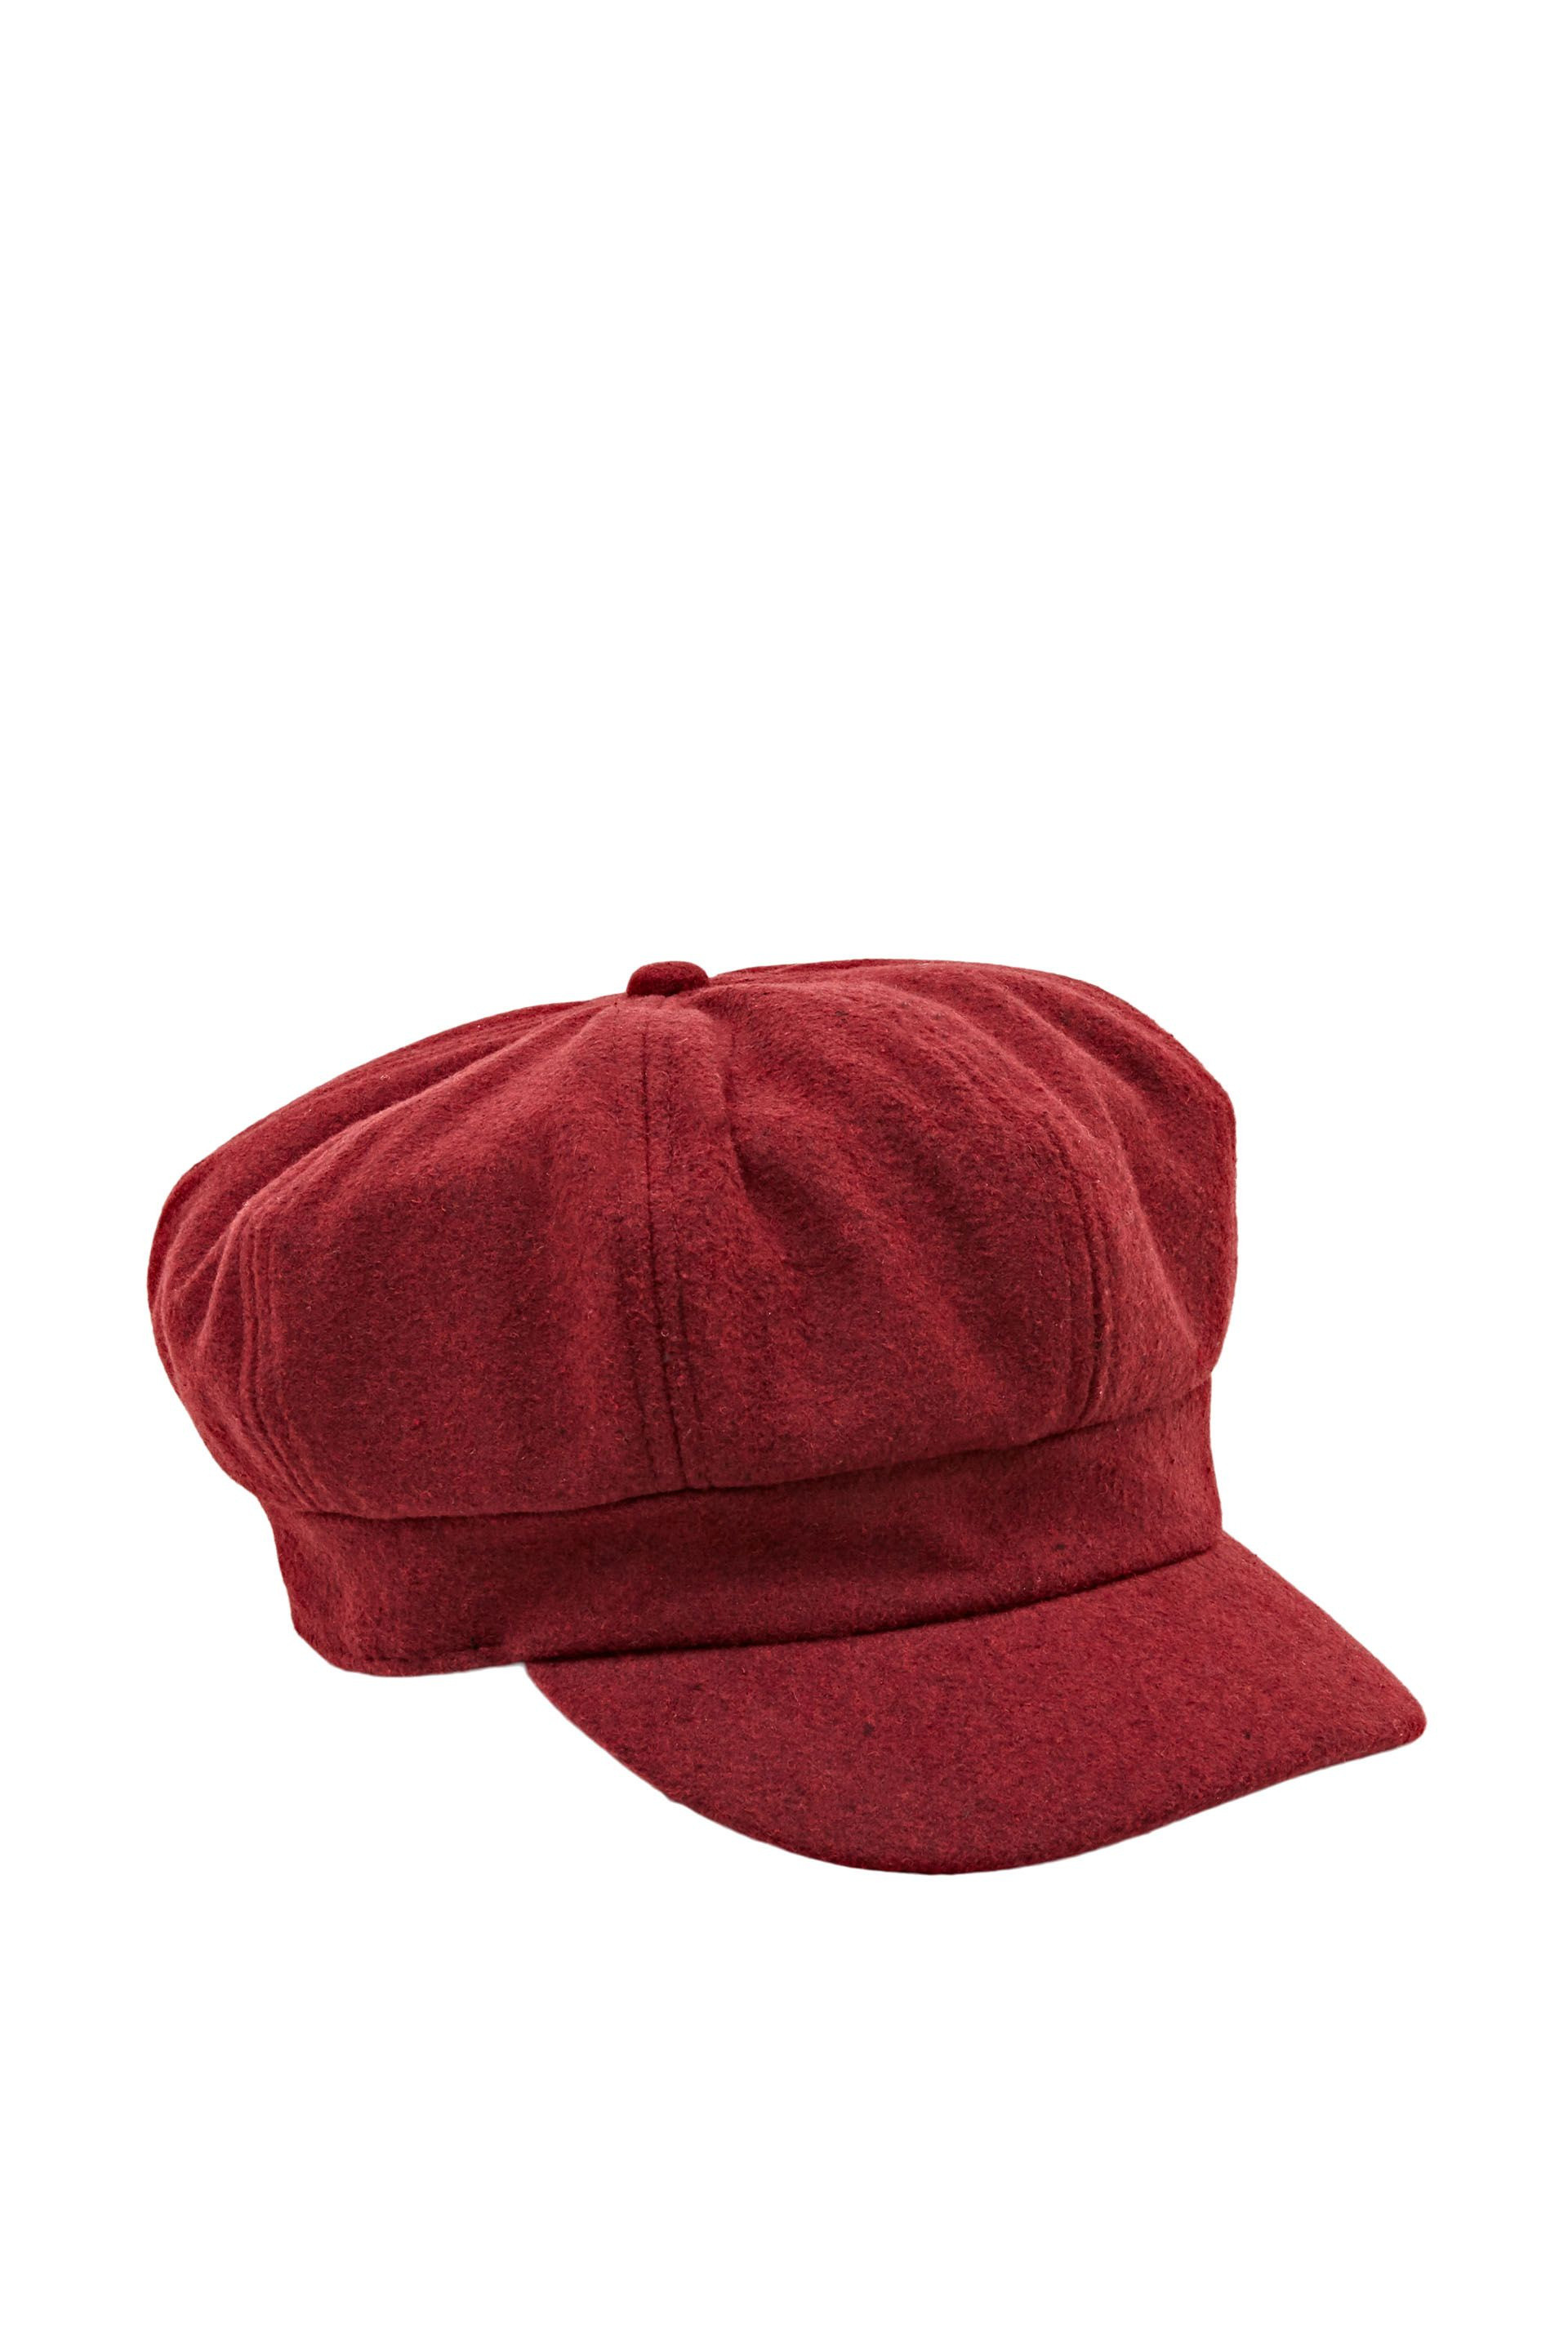 Baker boy cap, Red, large image number 0